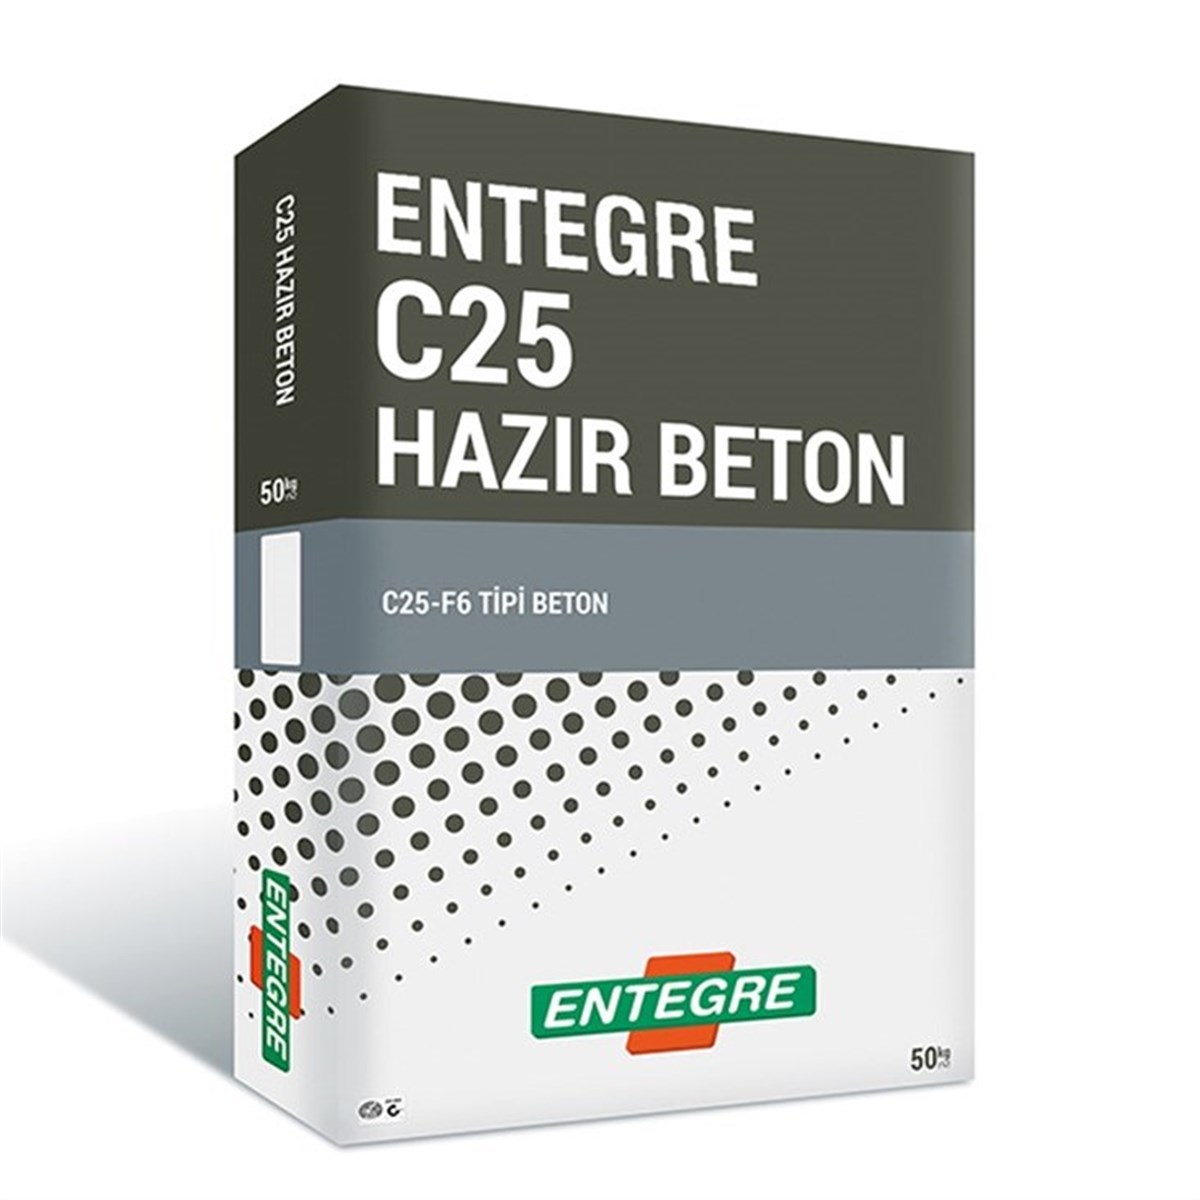 ENTEGRE C25 HAZIR BETON 50 KG